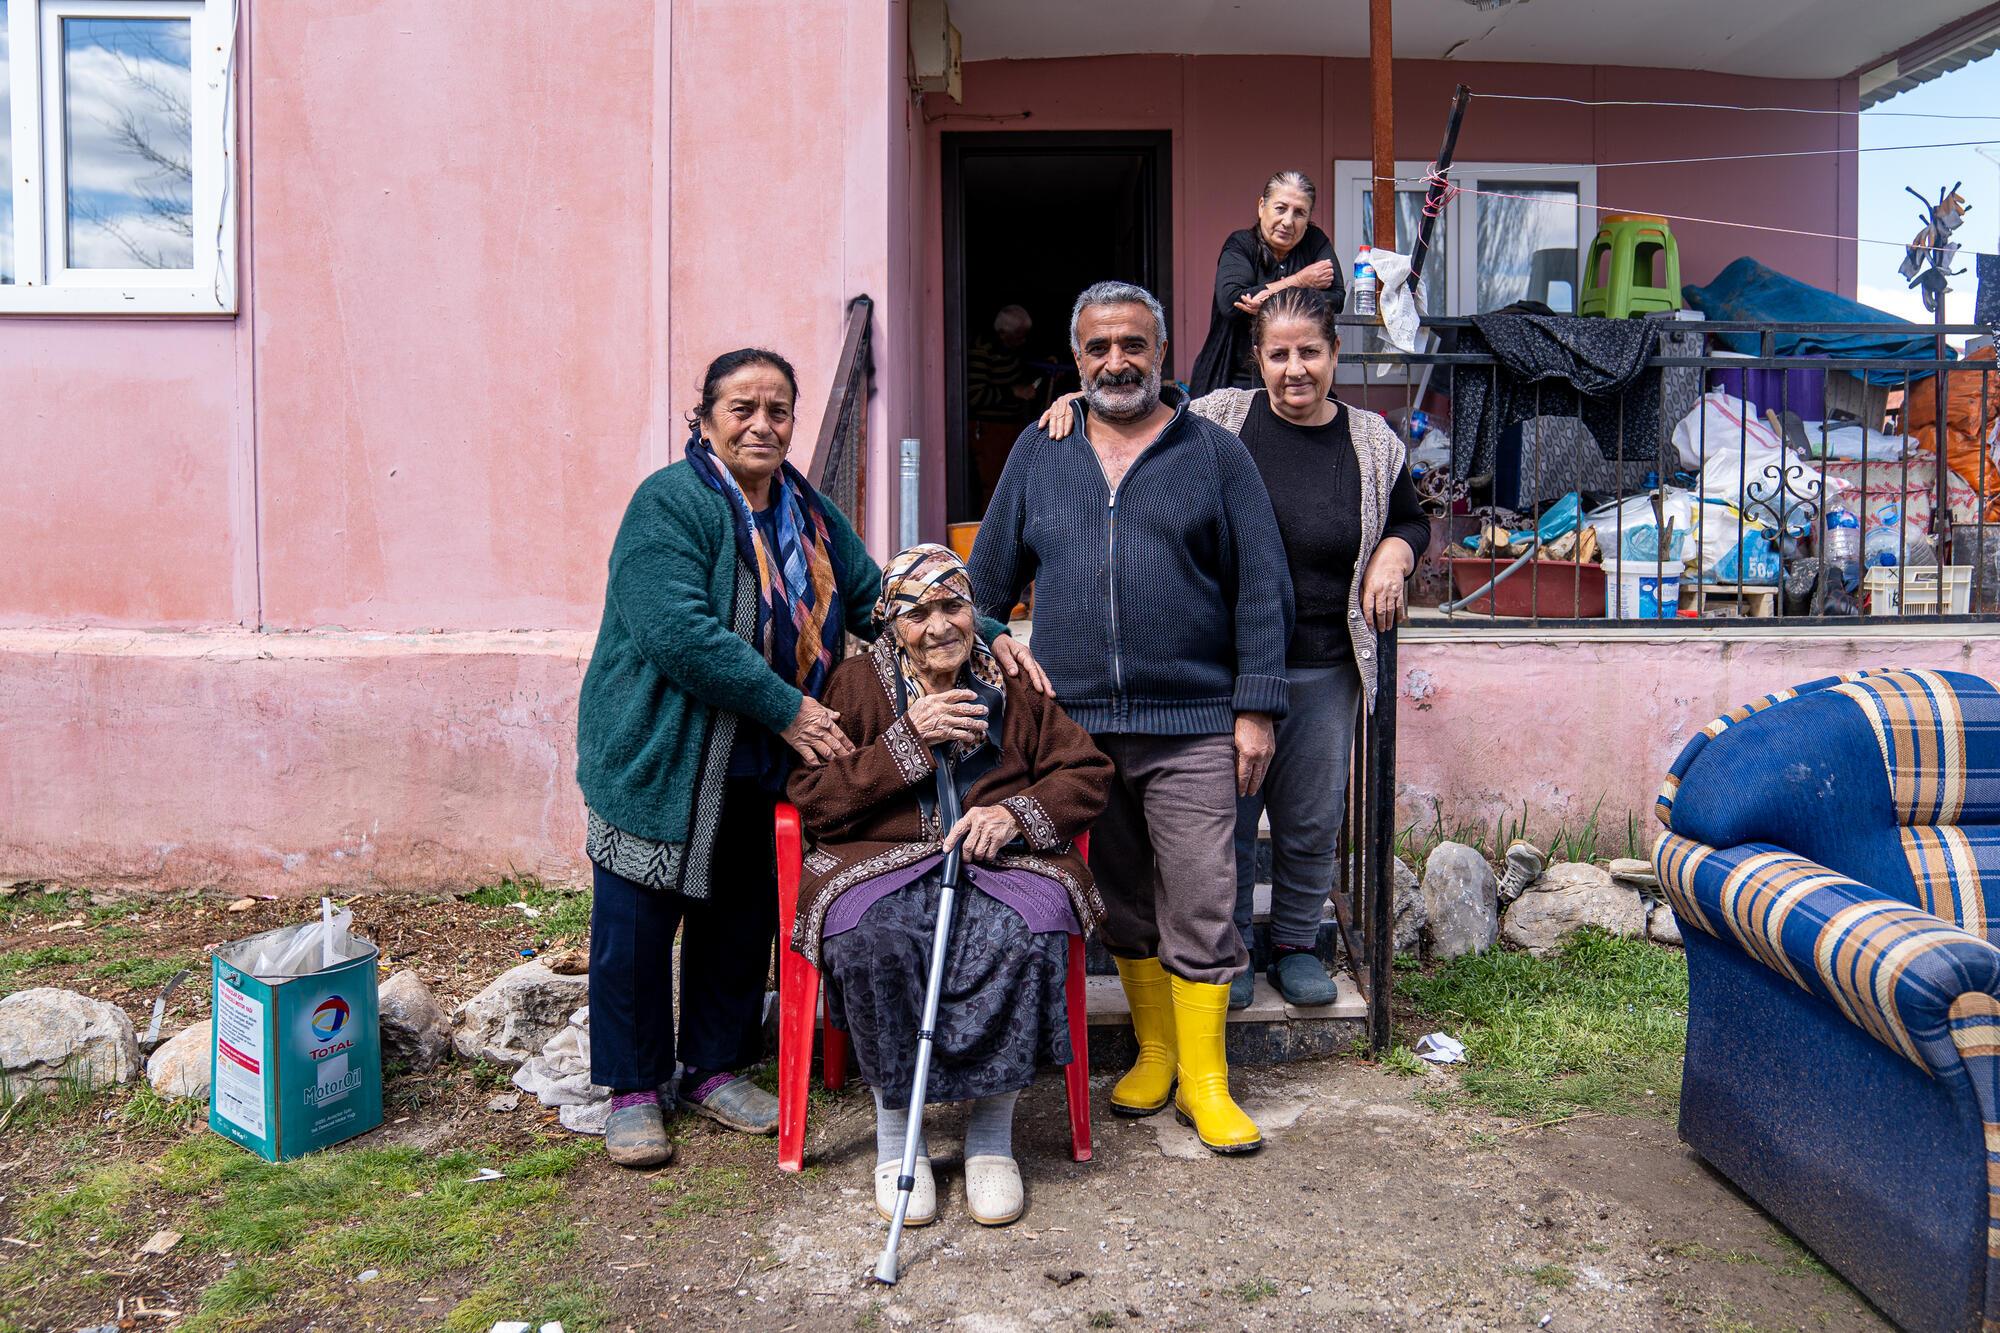 Semra Karaca, Sultan Kodaş, Hüseyin Kodaş et Şengül Kodaş (de gauche à droite) vivent en famille dans le village d'Ören, à la périphérie de Malatya, en Turquie. Ils ont été très affectés par les récents tremblements de terre, ainsi que par les fortes inondations dans la région. Mars, 2023 © Mariana Abdalla/MSF